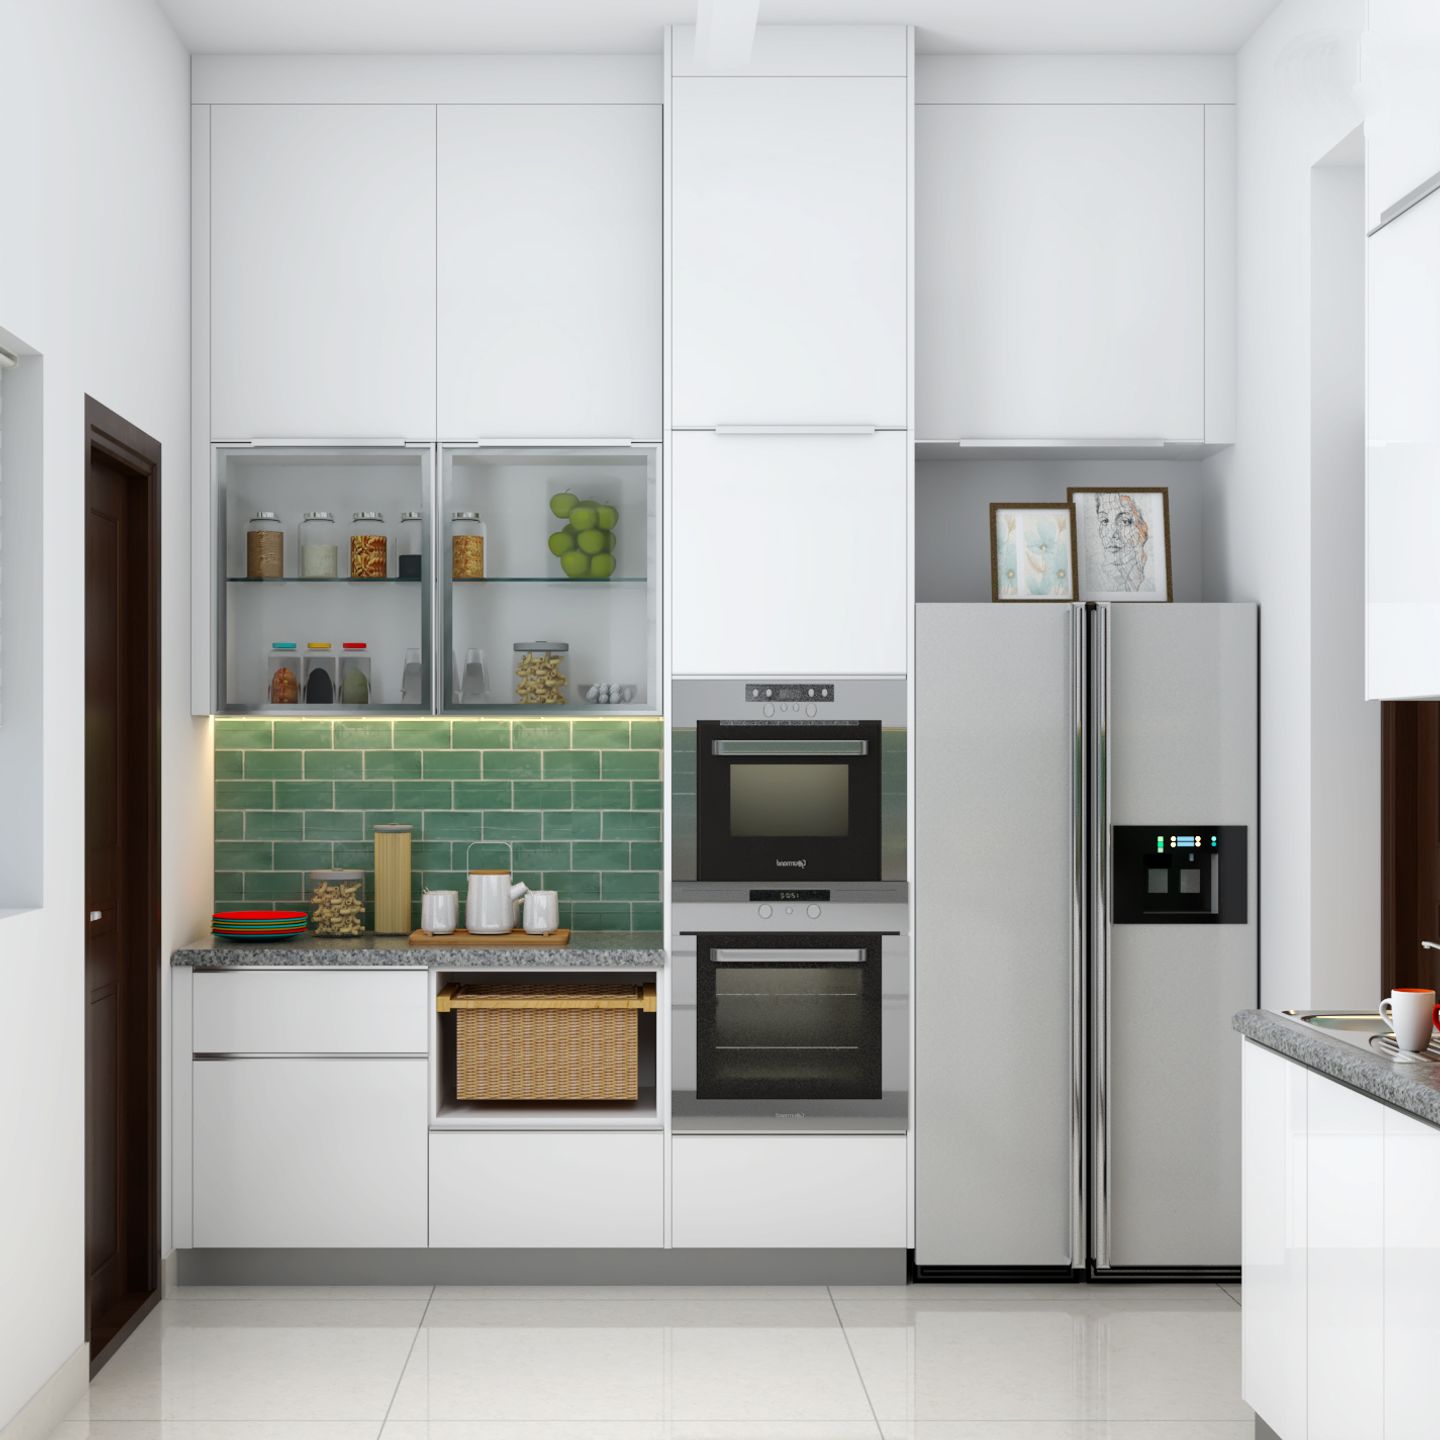 Aesthetic White Kitchen Design - Livspace